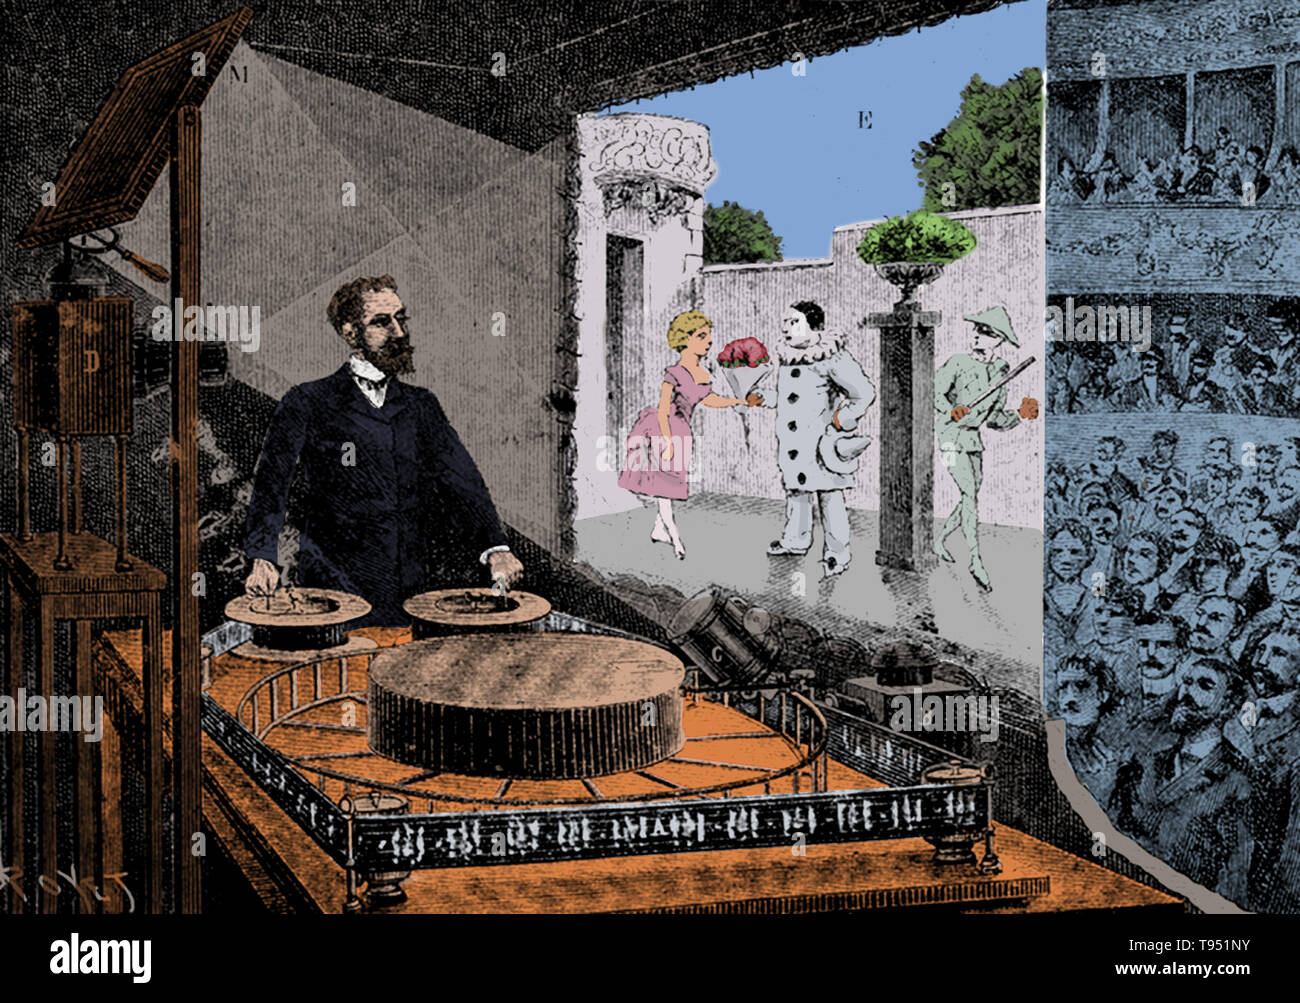 Das Theater Optique war ein bewegtes Bild zeigen, indem Charles-Emile Reynaud 1892 präsentiert. Es war die erste Präsentation von projiziert bewegte Bilder zu einem Publikum Fenstergestaltung, Auguste und Louis Lumière die erste öffentliche Aufführung von drei Jahren. 1876, Reynaud, ein französischer Erfinder, hatte das praxinoskop, eine Verbesserung der Zoetrope erstellt. 1878 produzierte er den praxinoskop Theater. Stockfoto